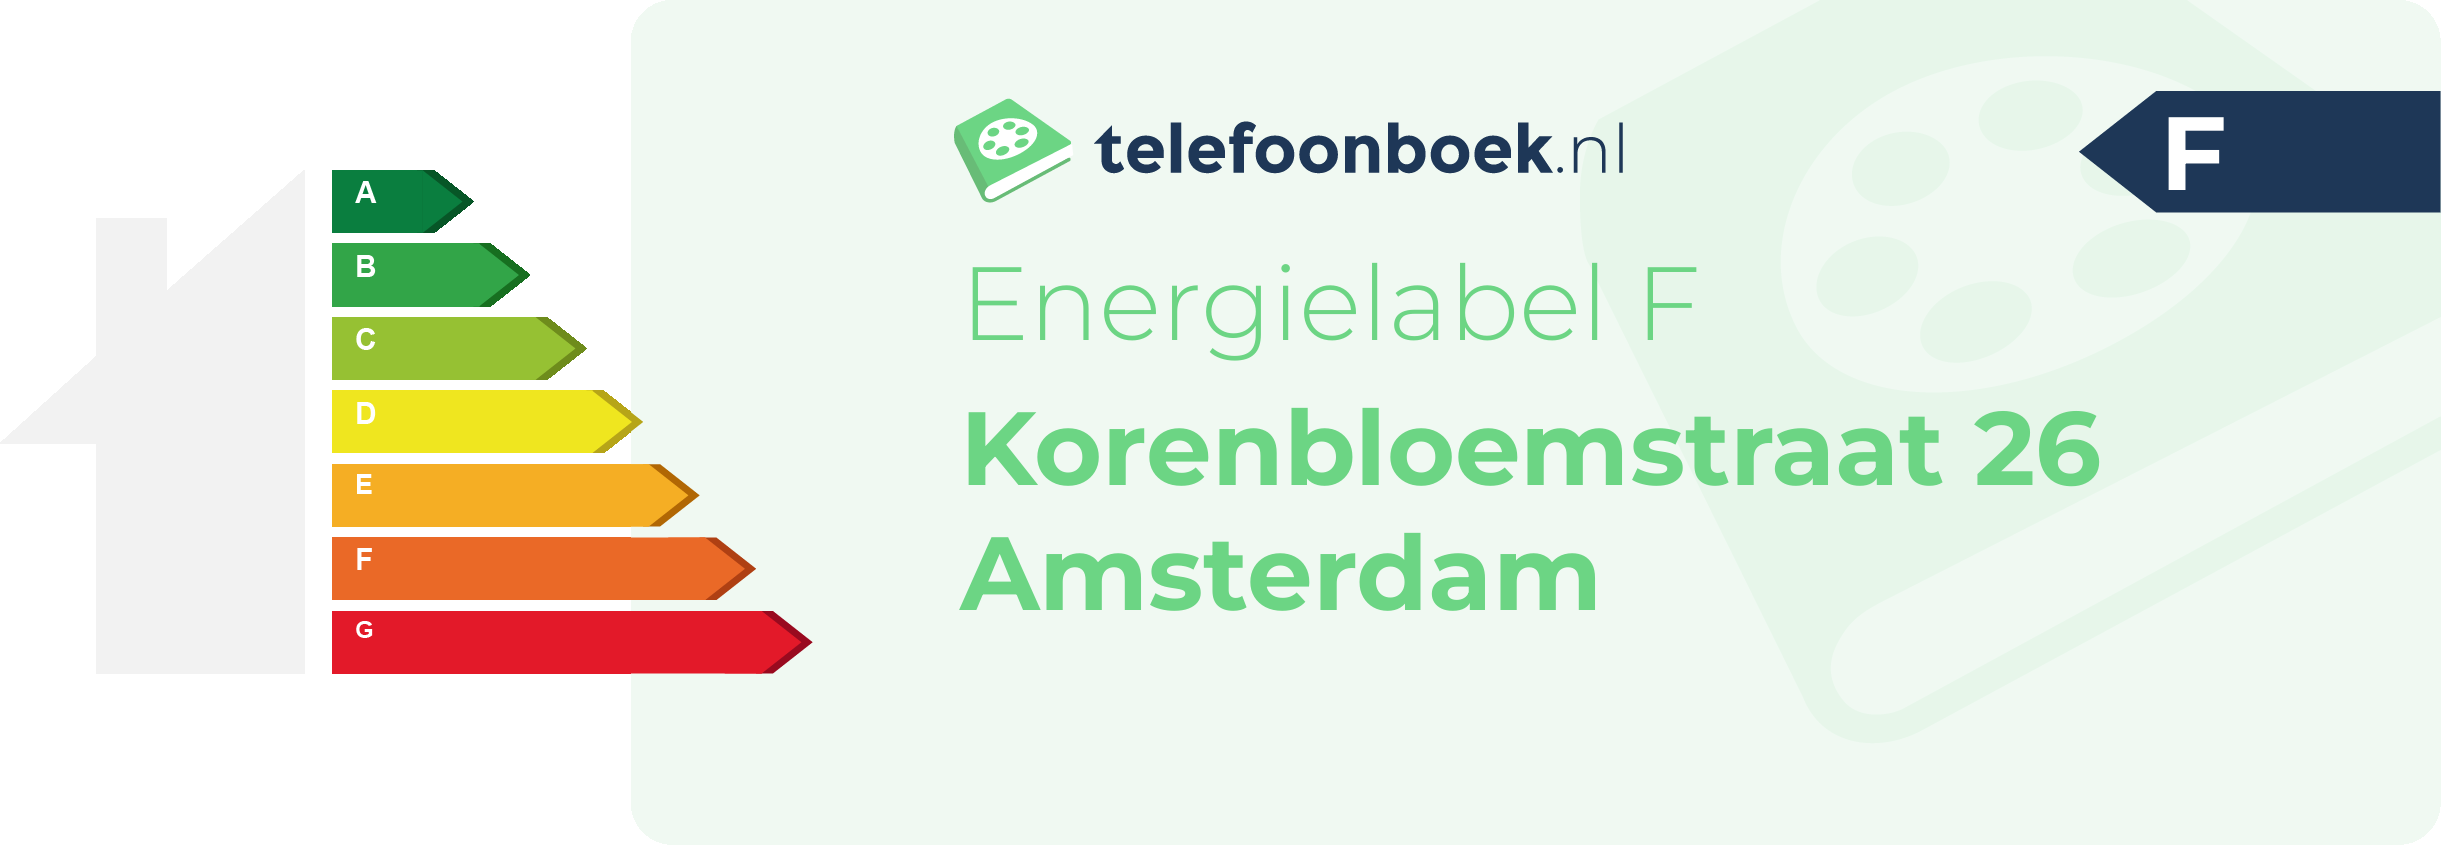 Energielabel Korenbloemstraat 26 Amsterdam